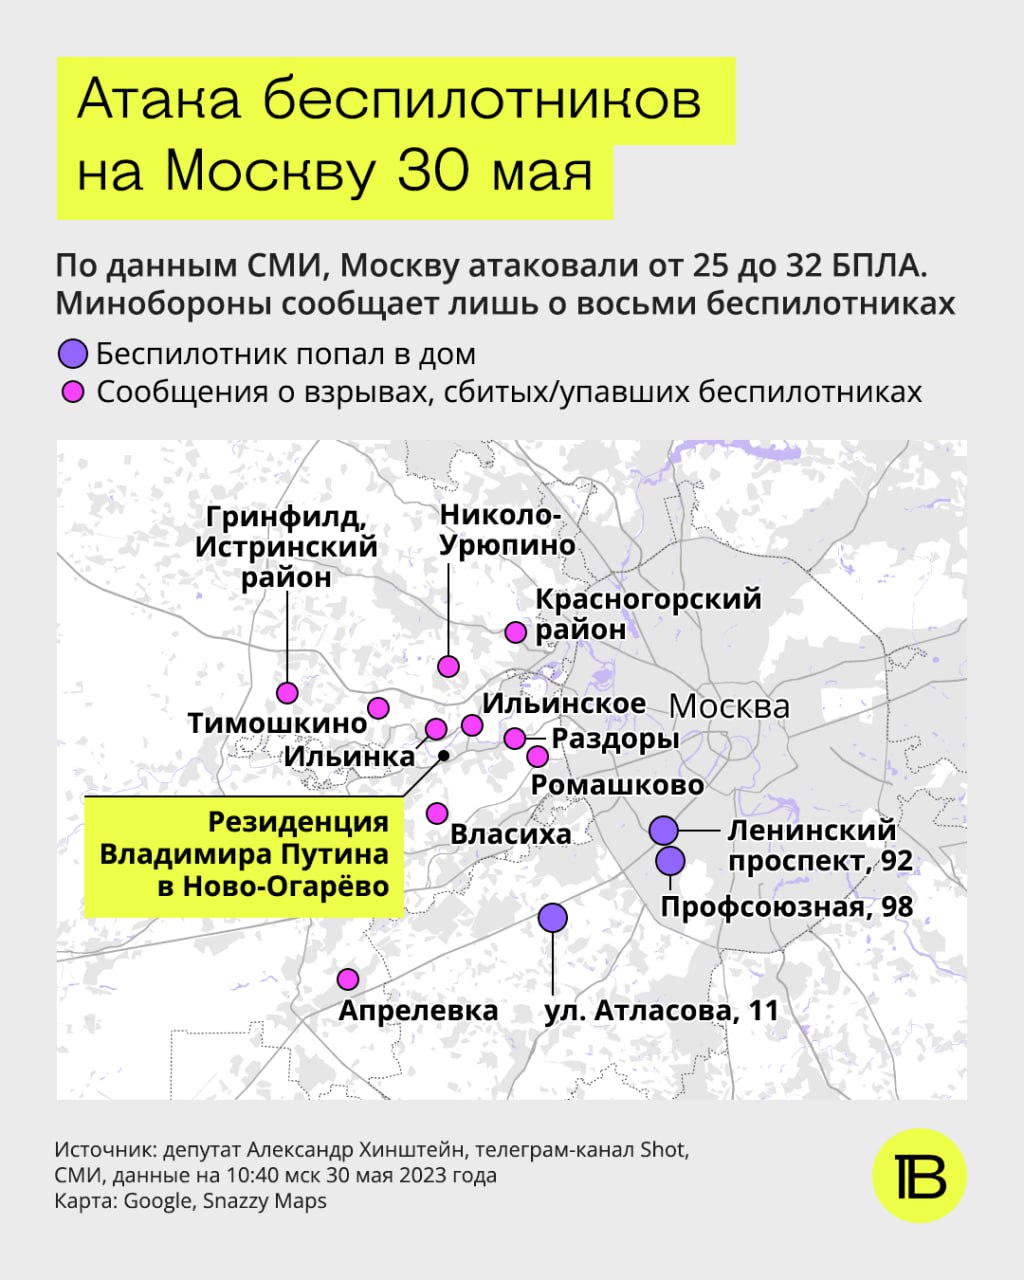 Налет дронов на Москву 30 мая (Карта: Верстка)